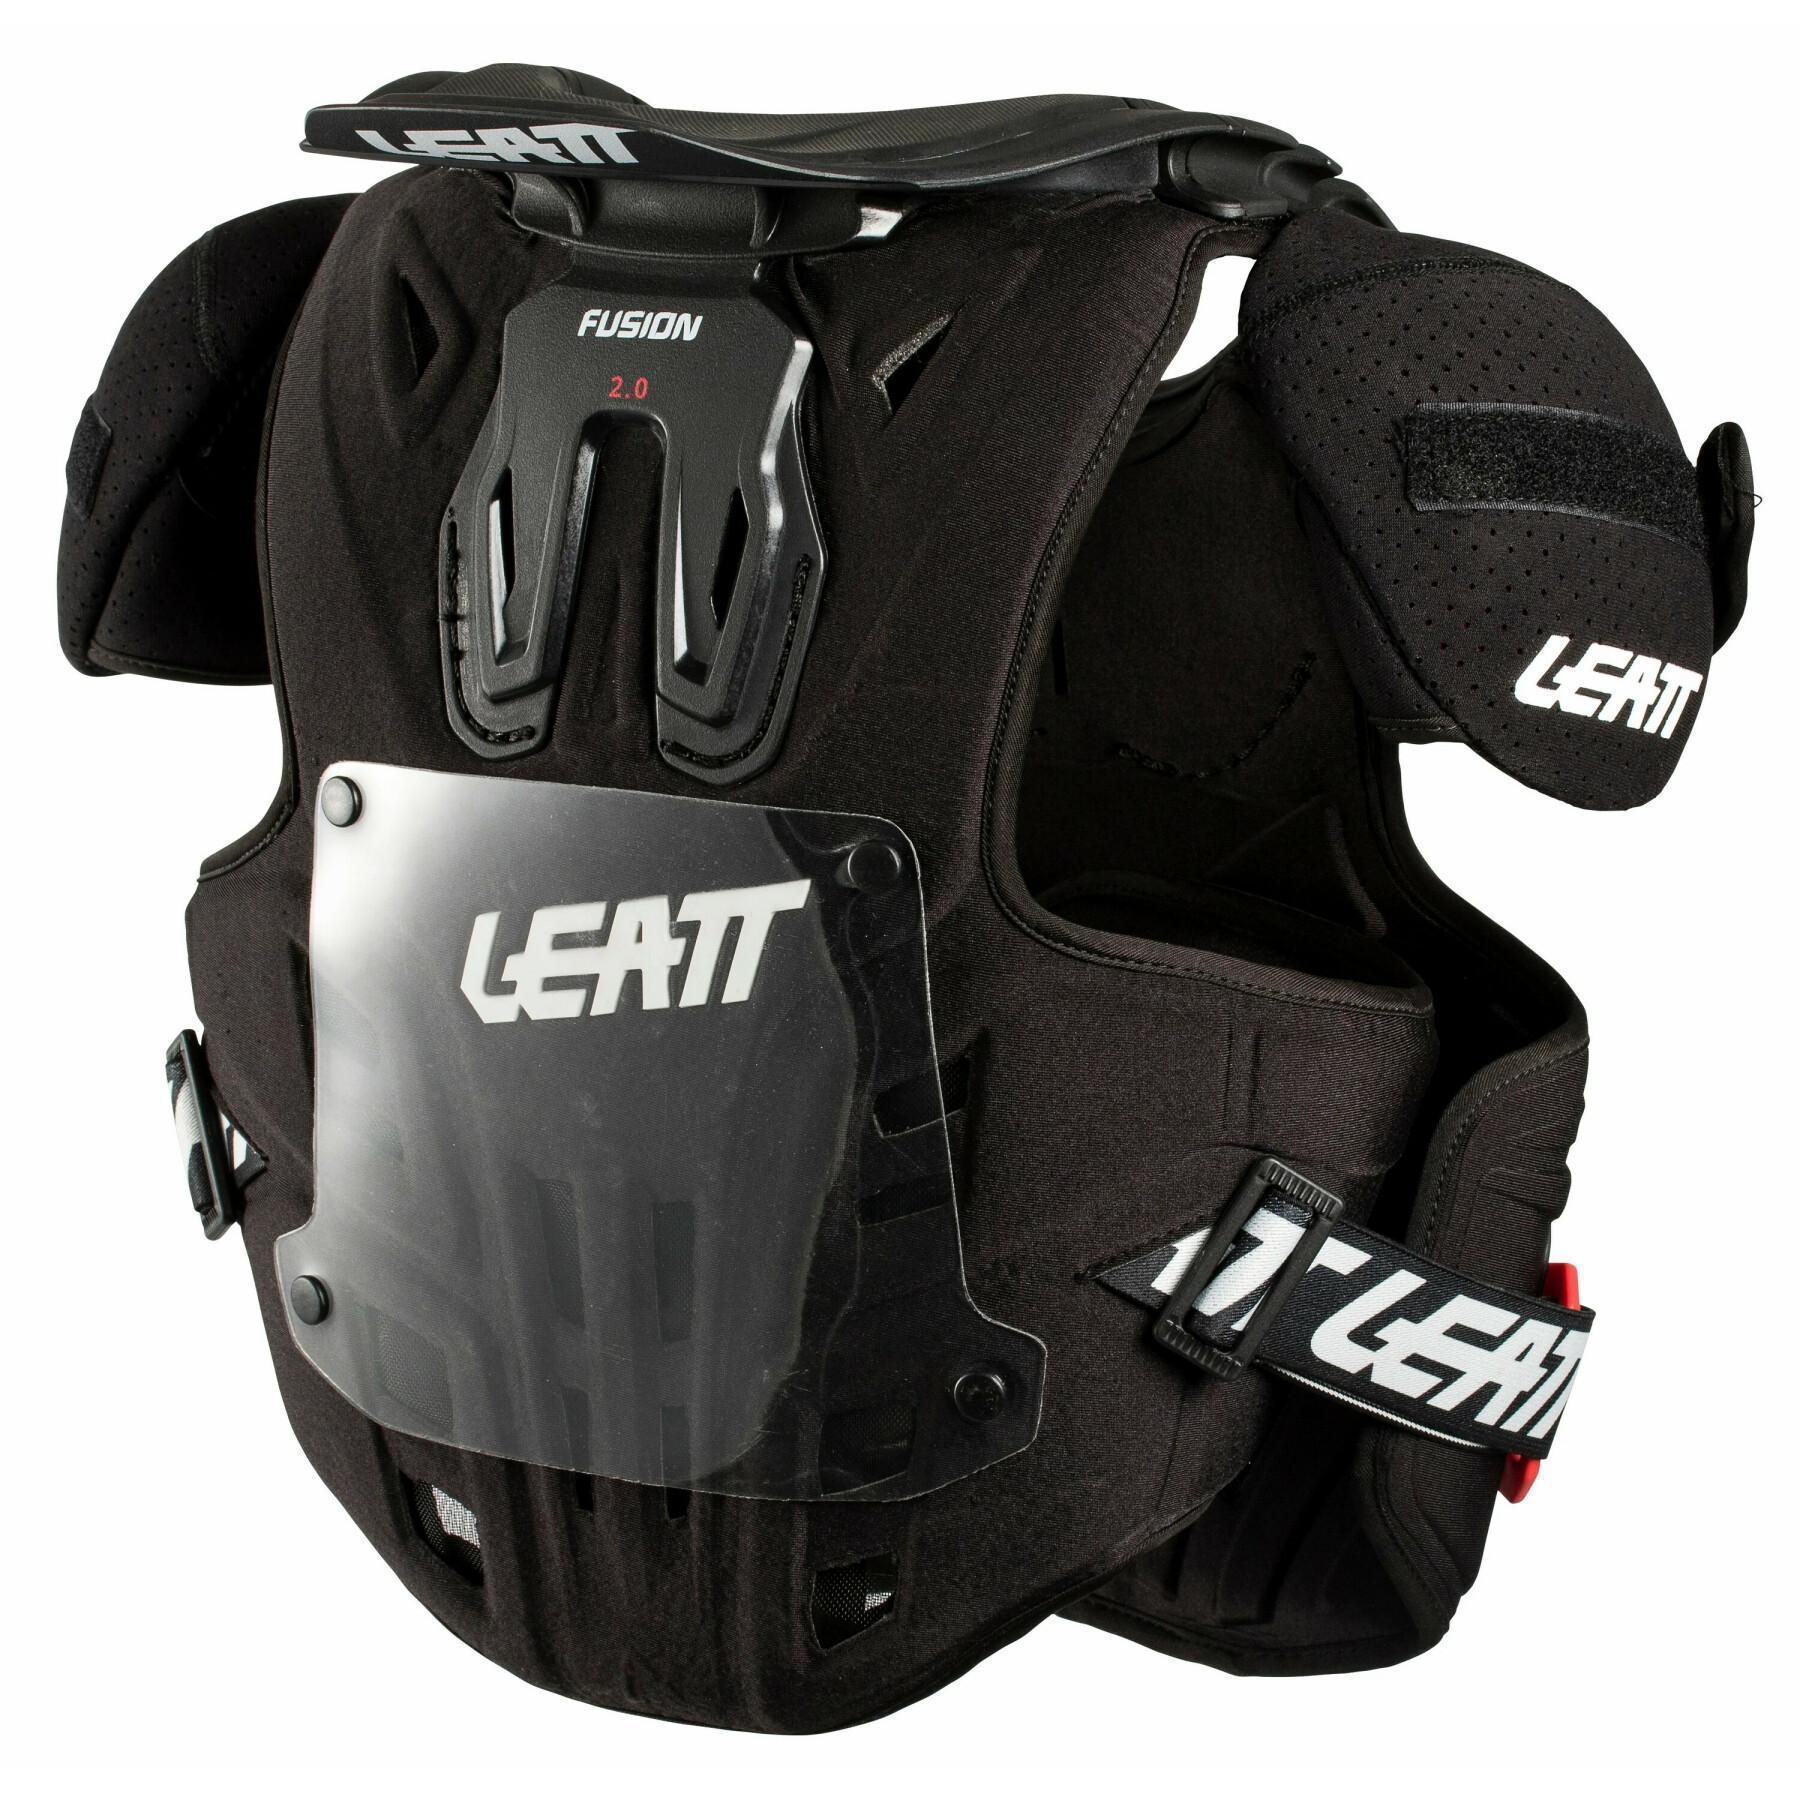 Protector pectoral de moto para niños Leatt 2.0